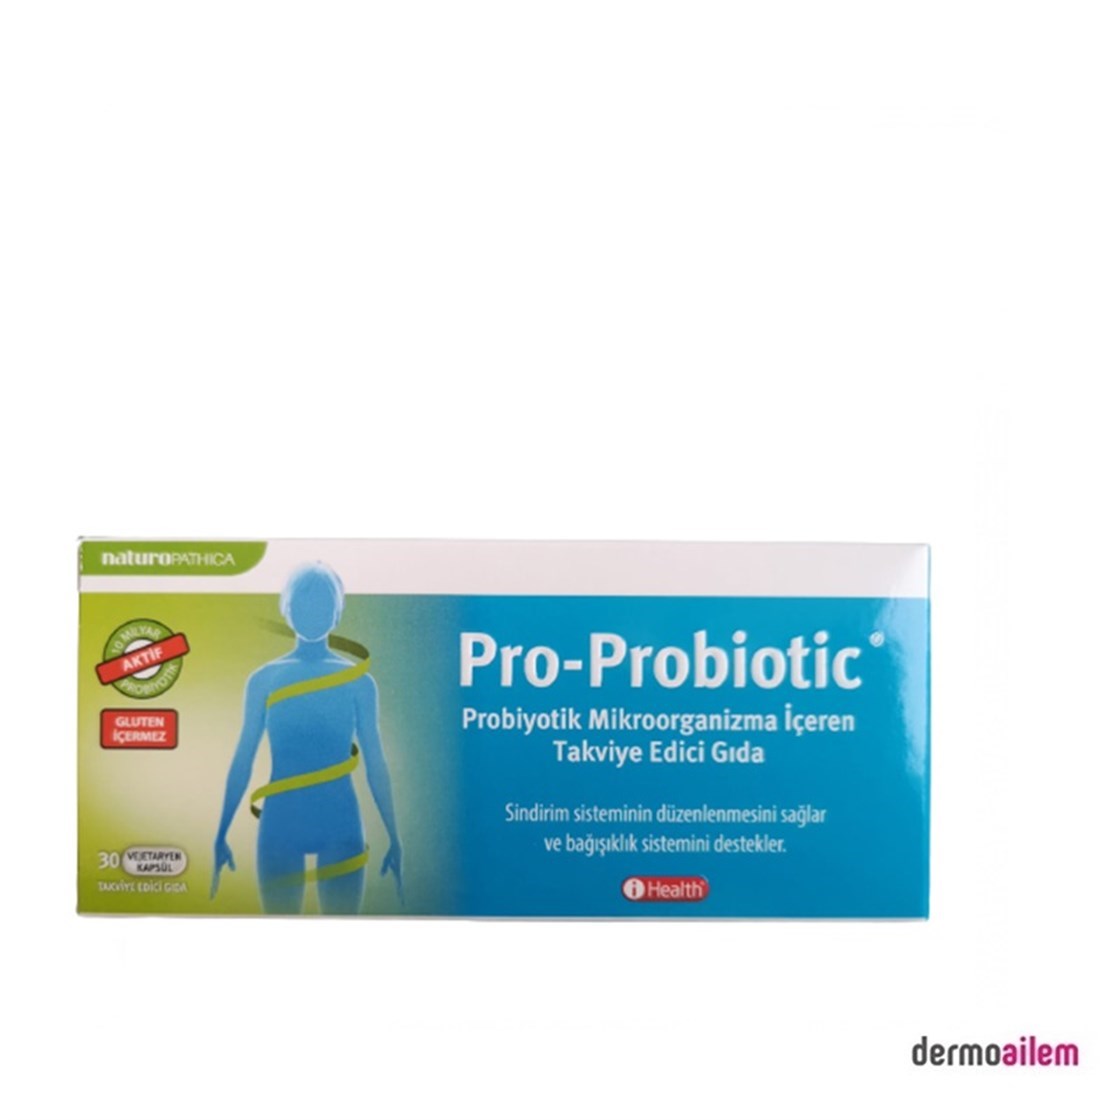 Pro-Probiotic 30 Kapsül Ürün ve Fiyatları | Dermoailem.com